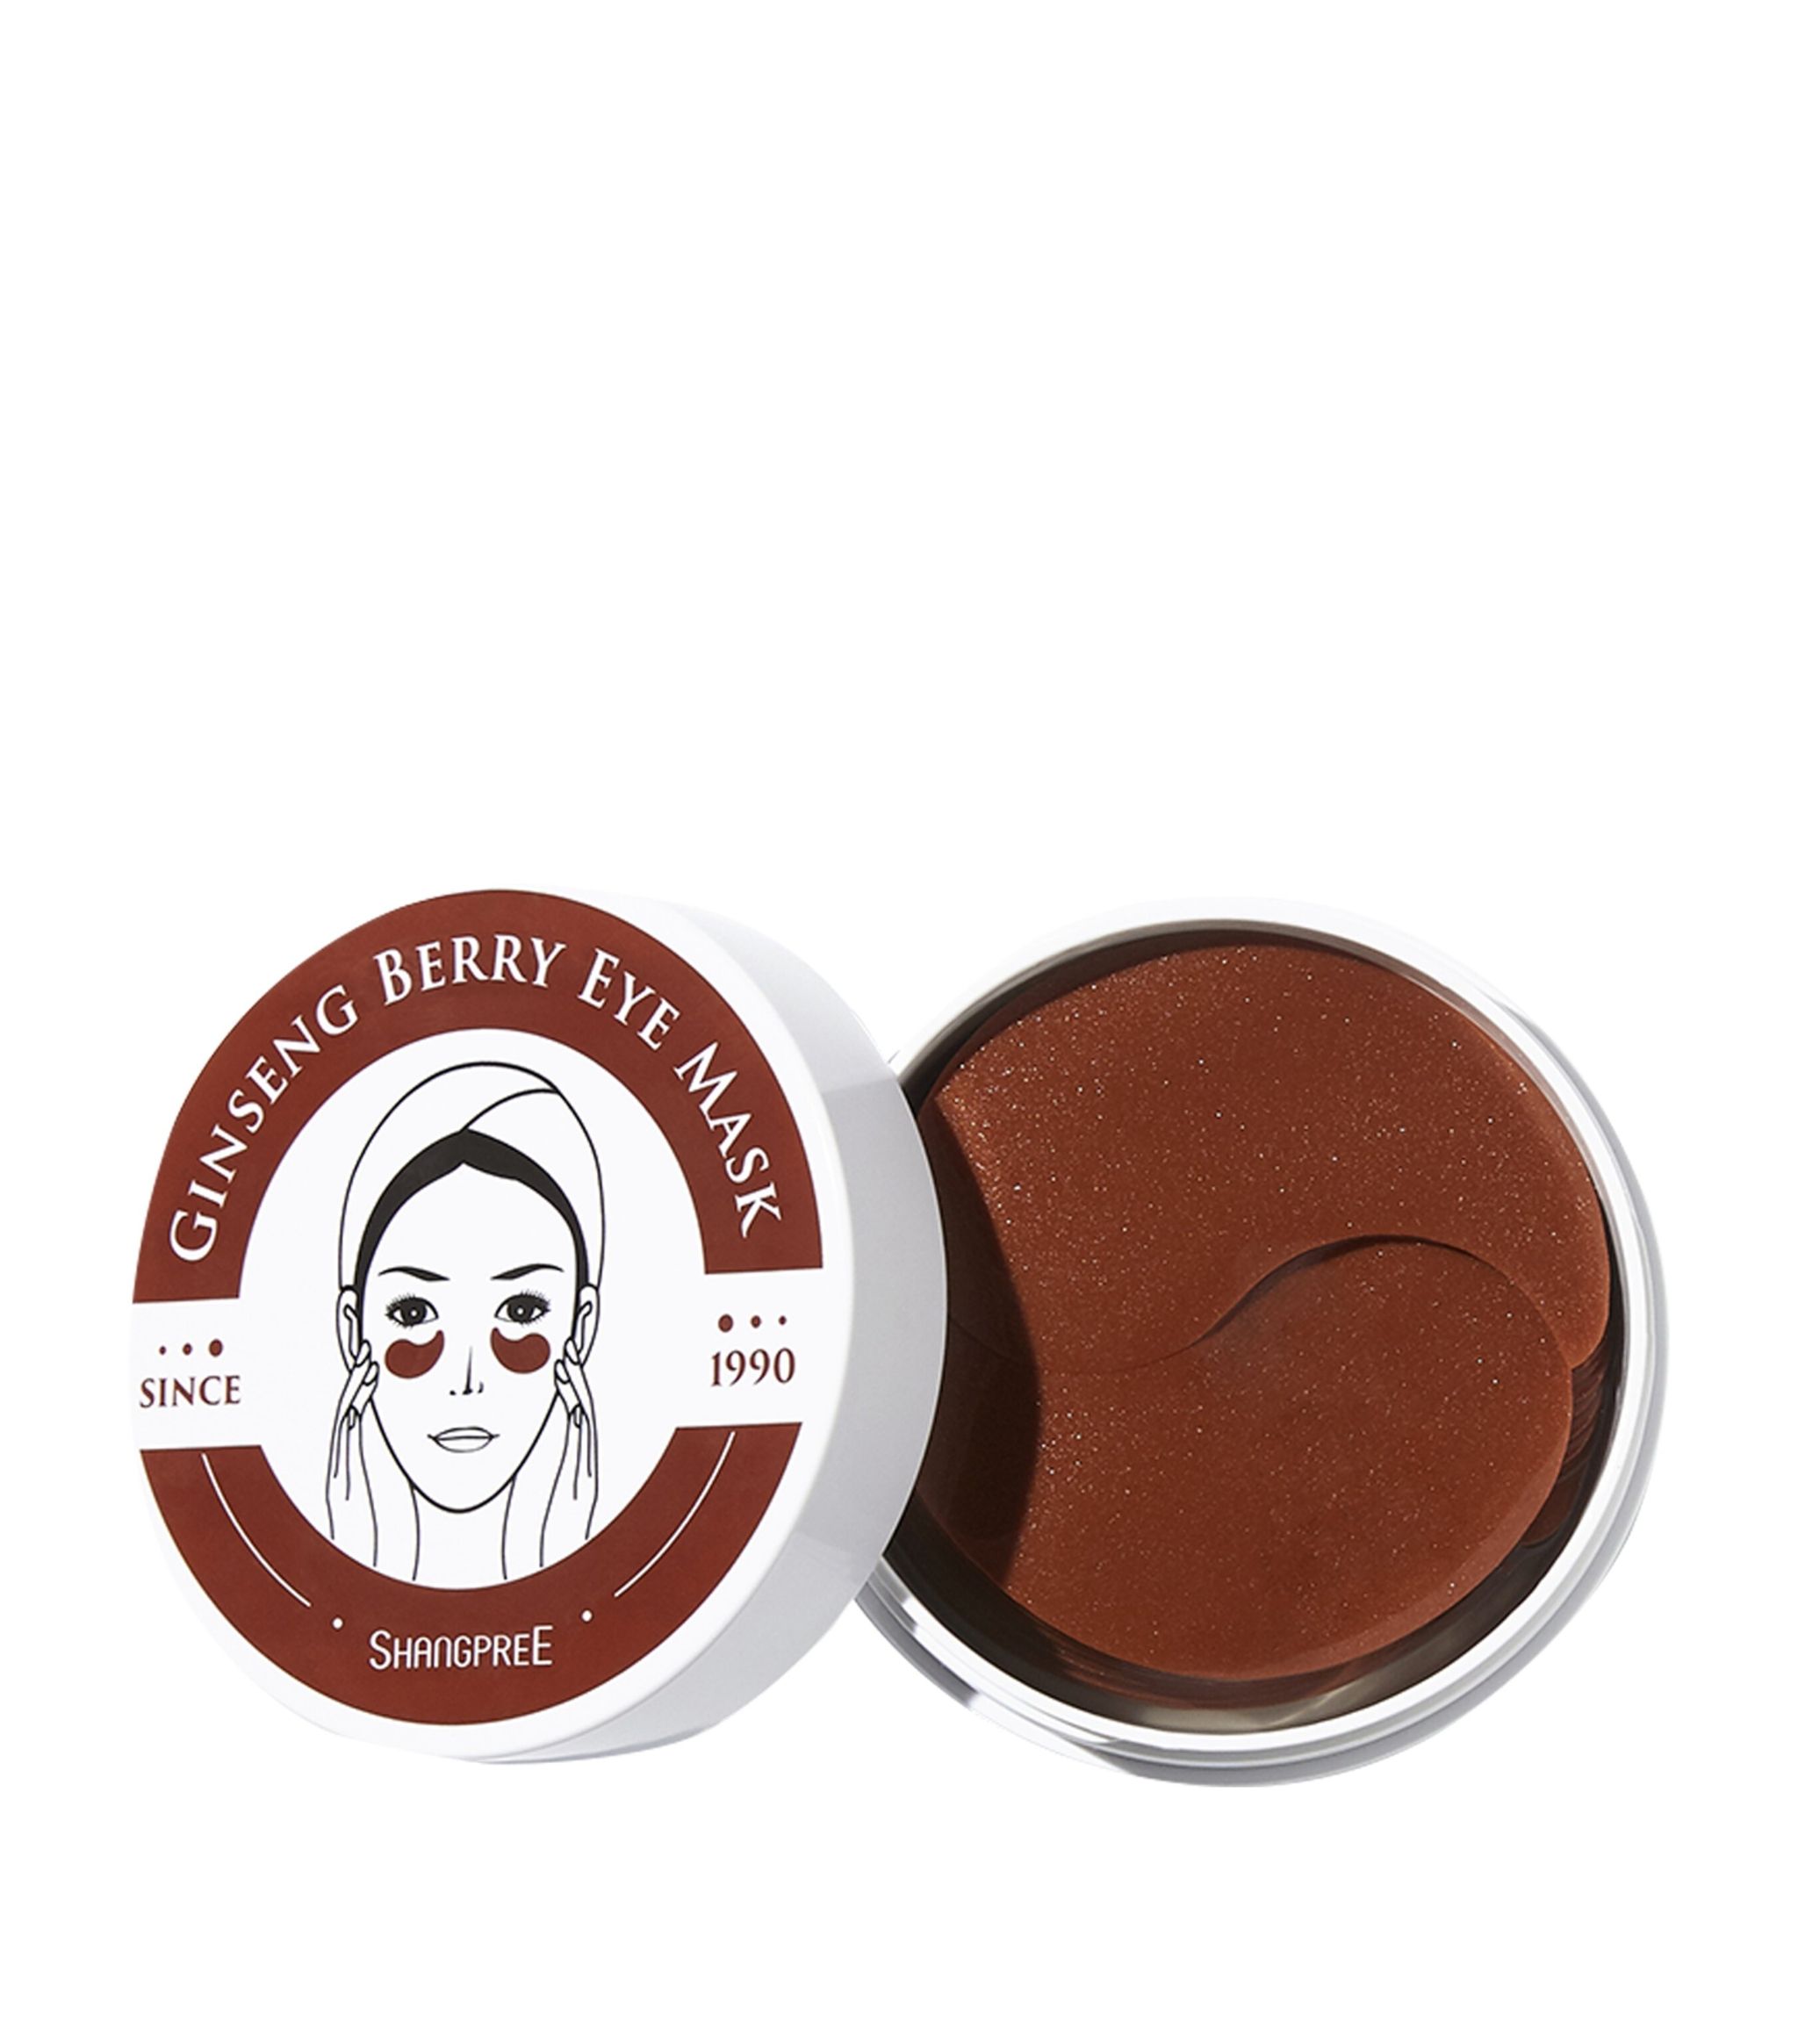 Ginseng Berry Eye Mask - 1pack (60pcs)